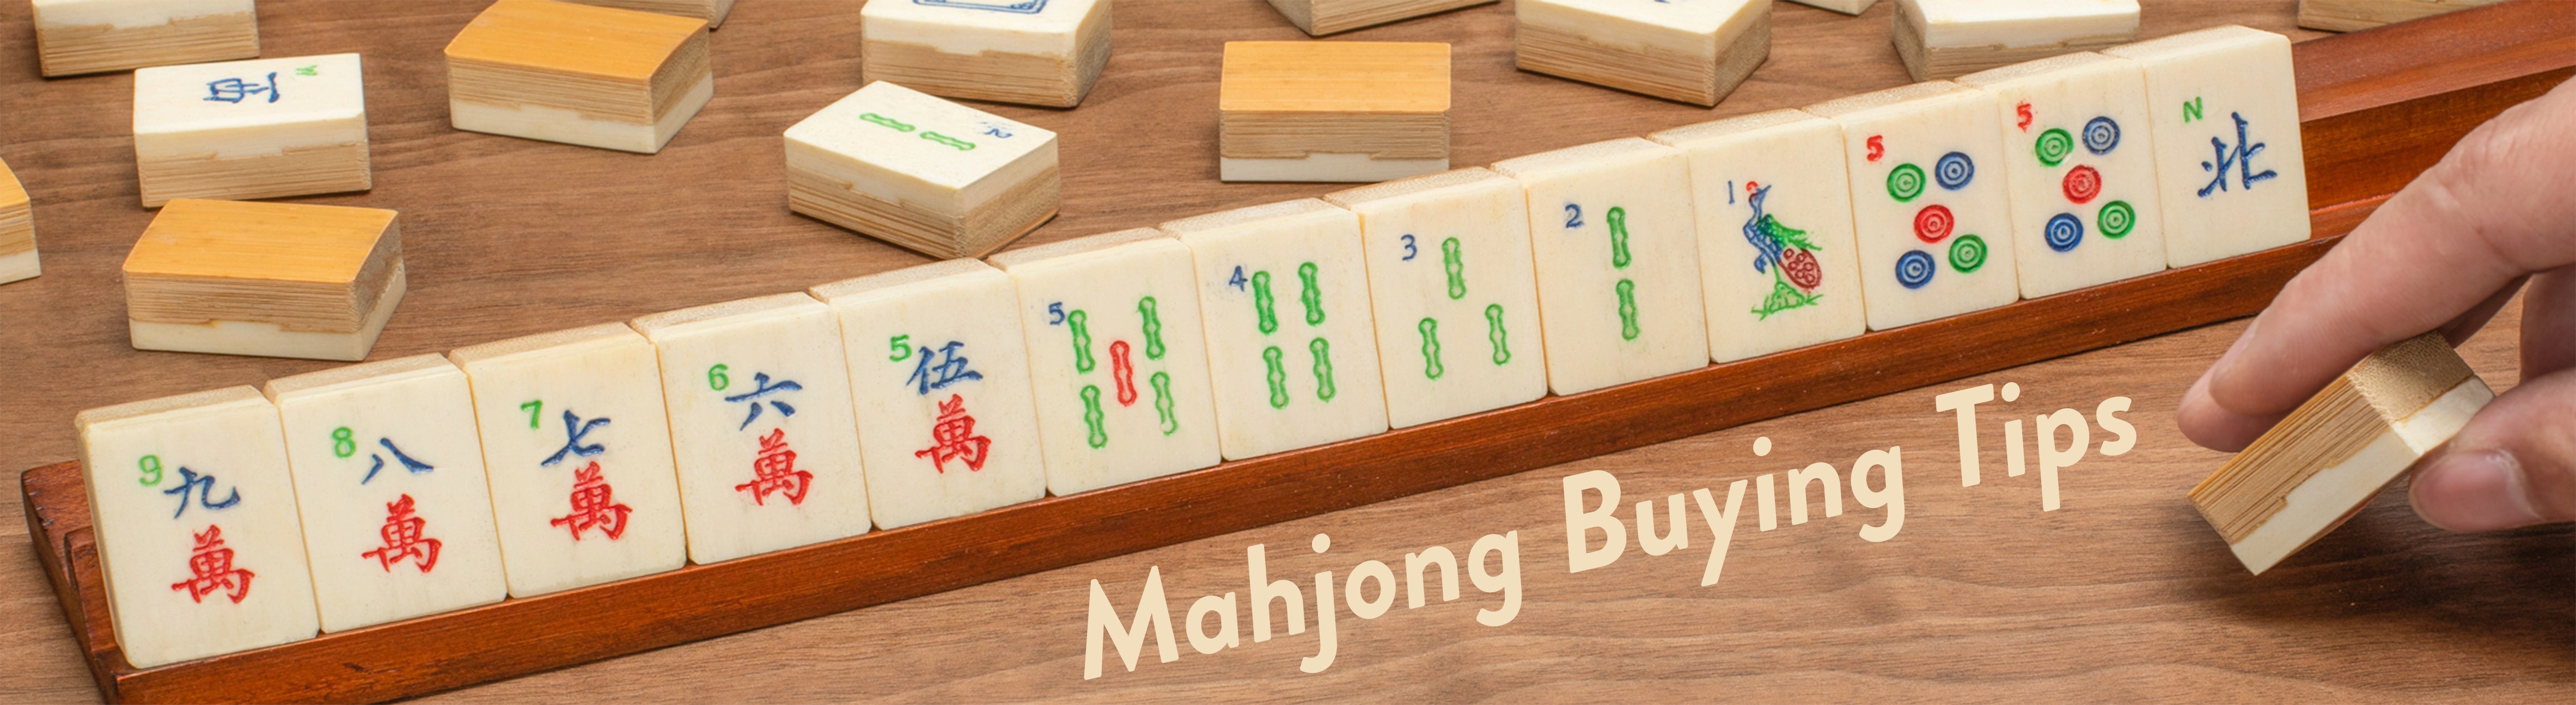 Mahjong Buying Tips